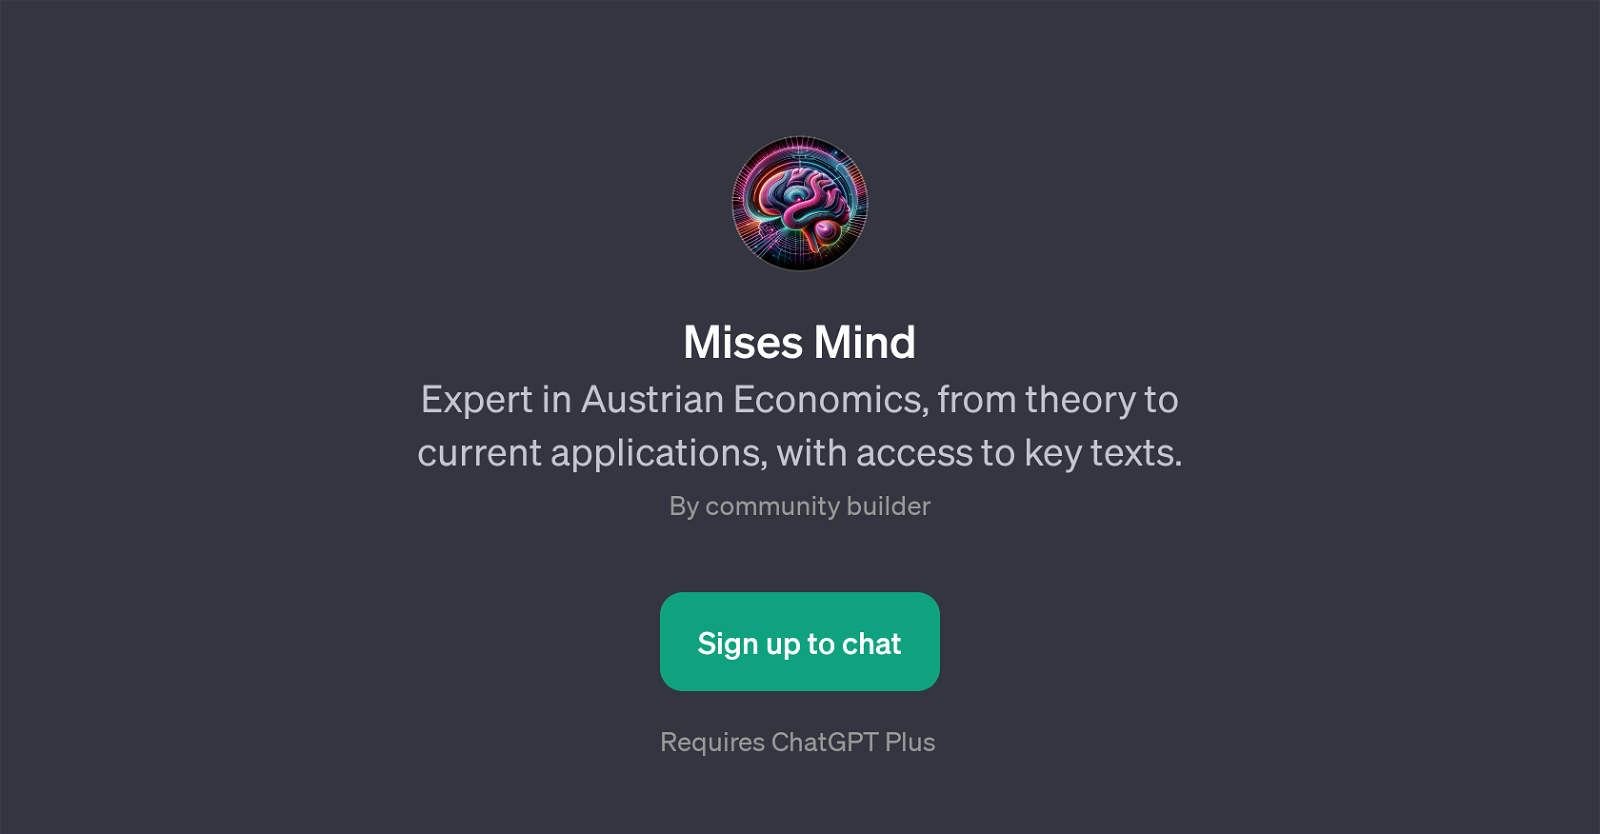 Mises Mind website